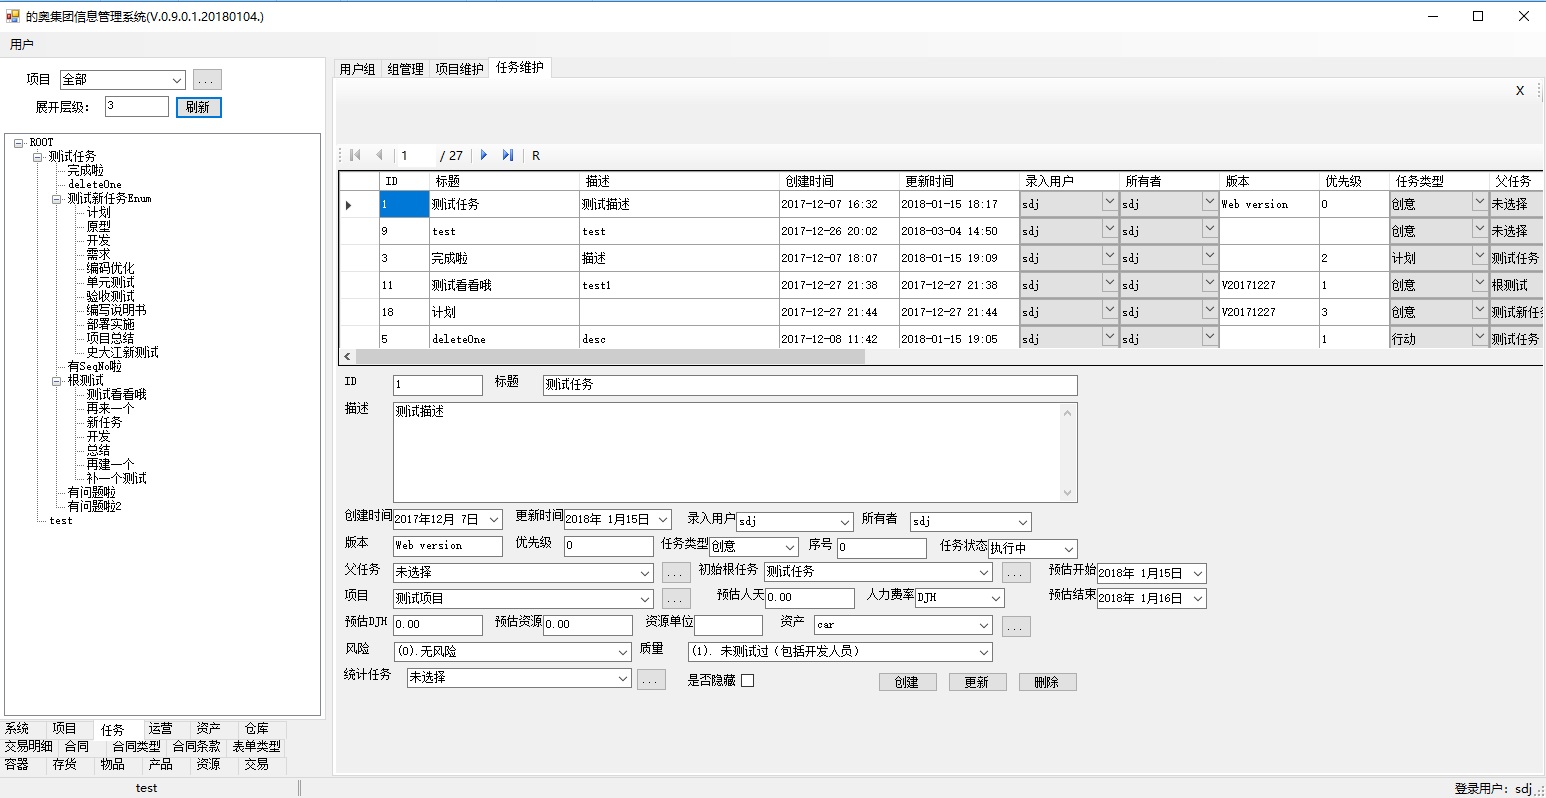 Shanghai Town Lake ERP项目管理软件任务管理支持多种结构的任务分解，除了父子树形结构外，还支持网状任务结构关系。任务管理软件包括优先级、任务类型、状态、所属项目、成本、风险等方面的管理。